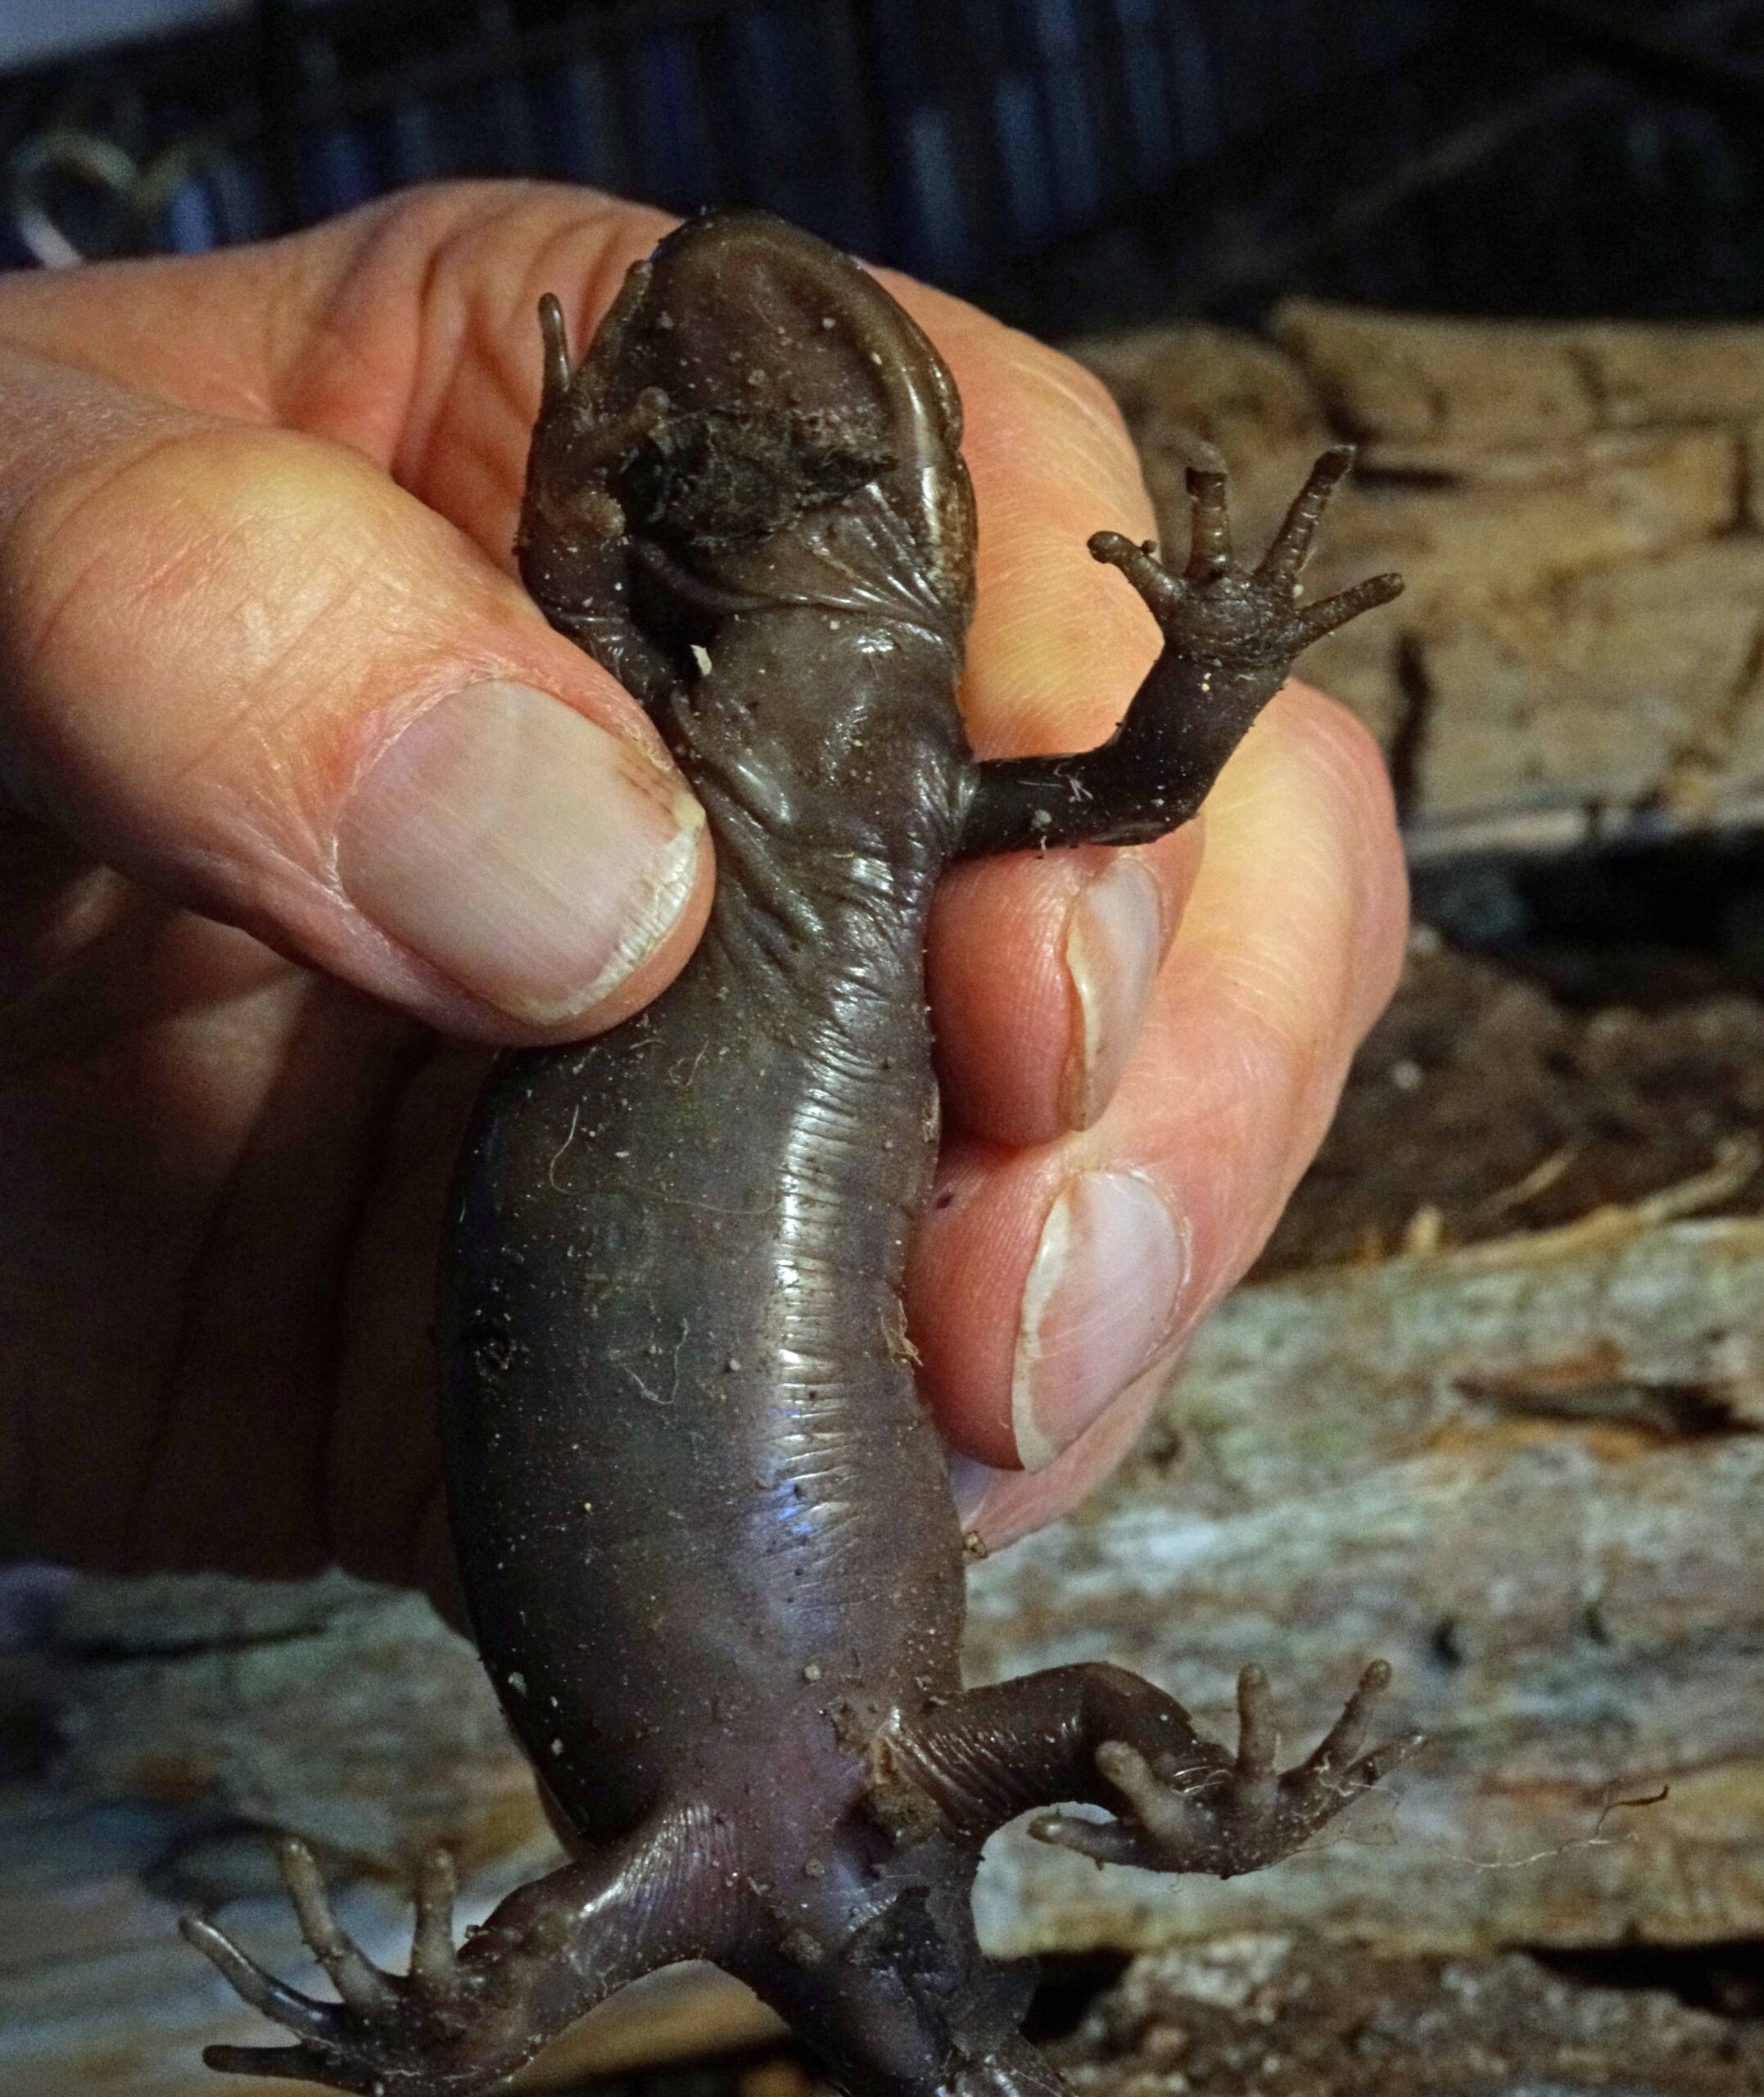 NW Brown Salamander